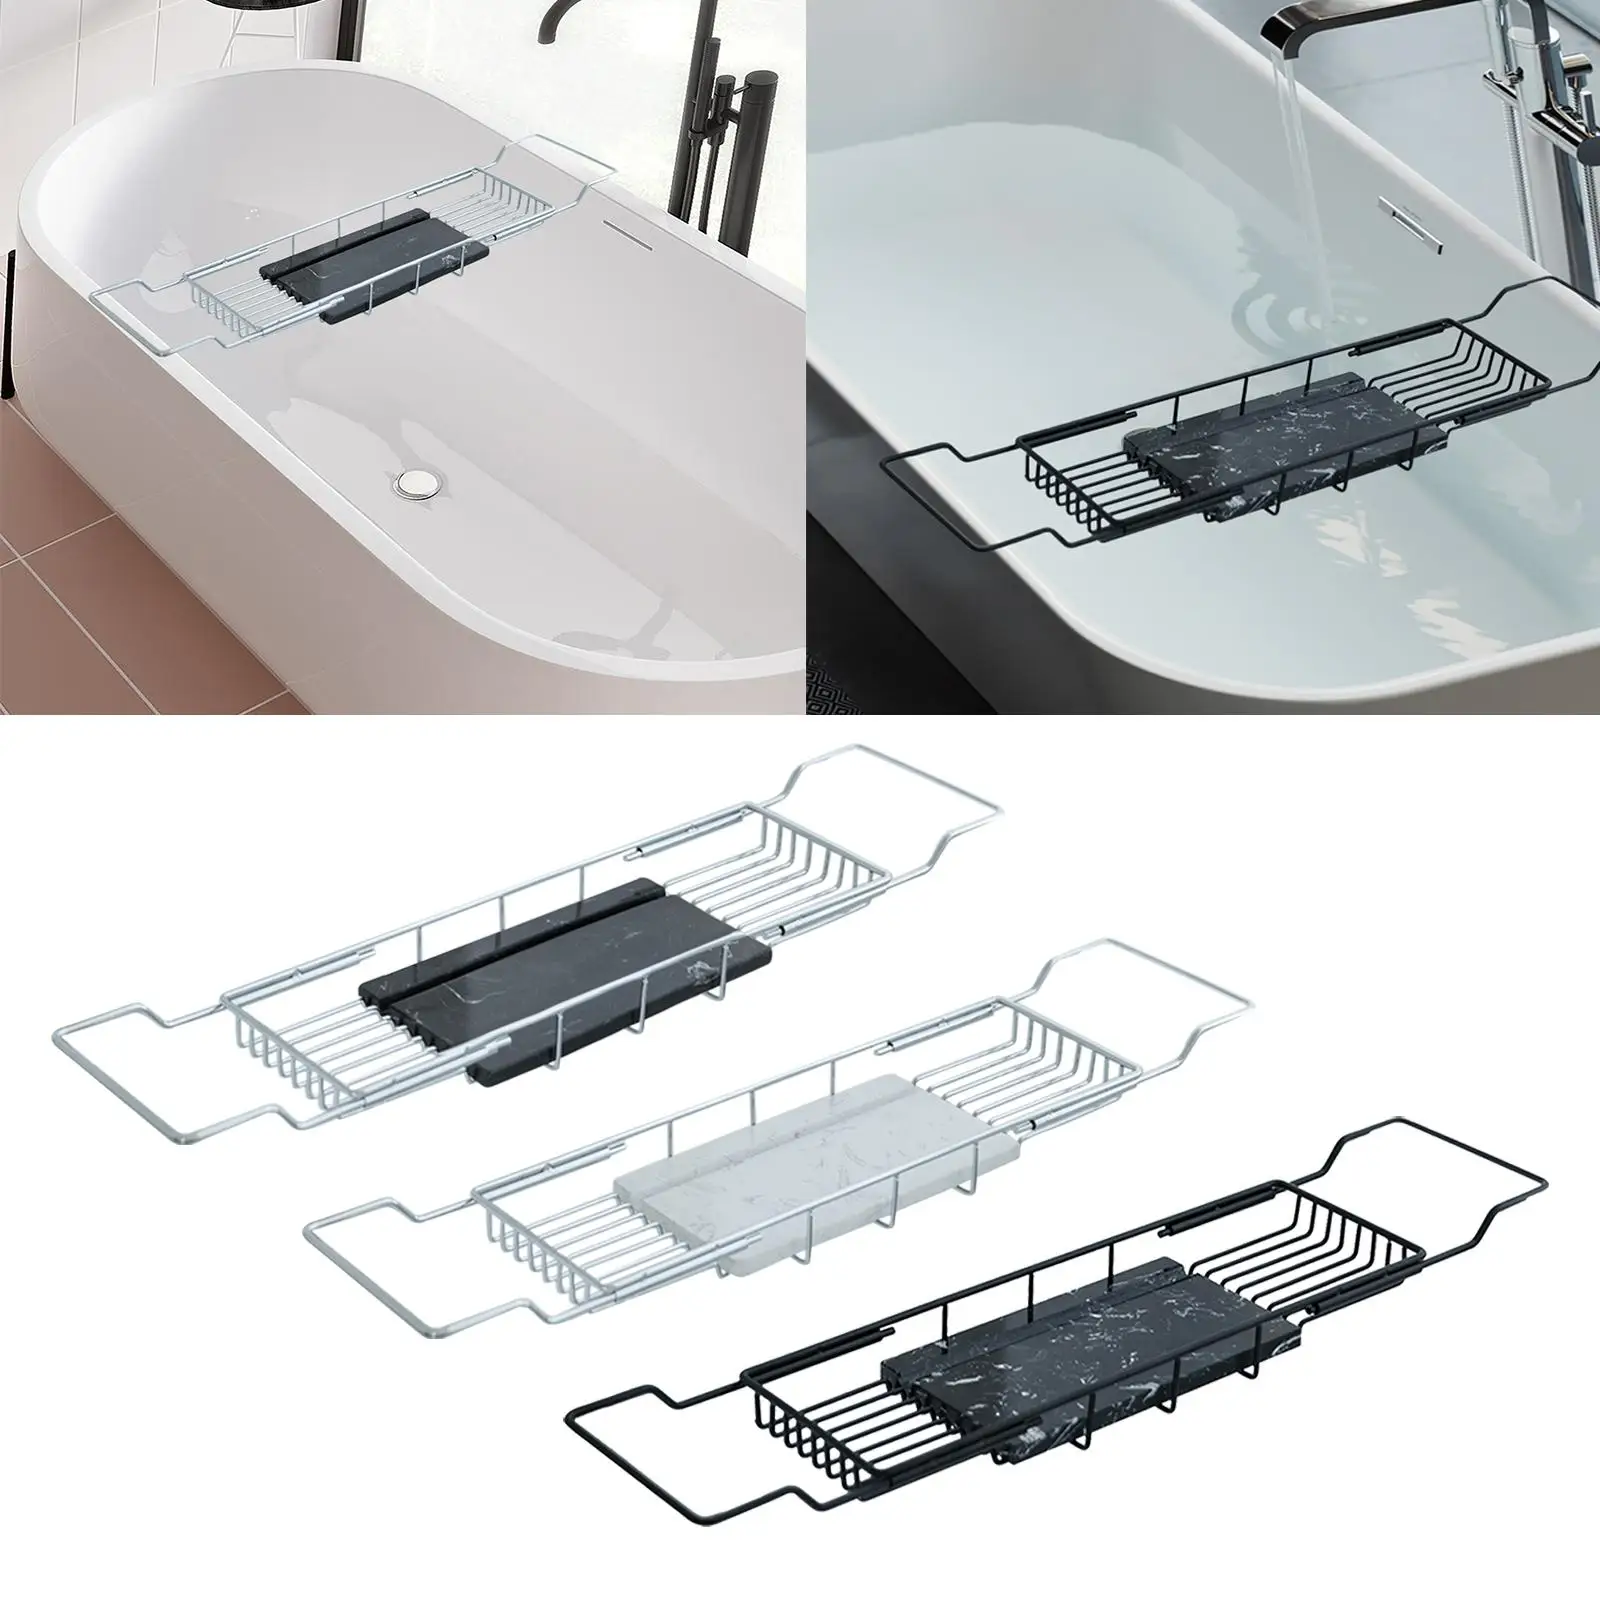 Bathtub Tray Caddy Bathtub Organizer Tray Bath Shelf Convenient Adjustable